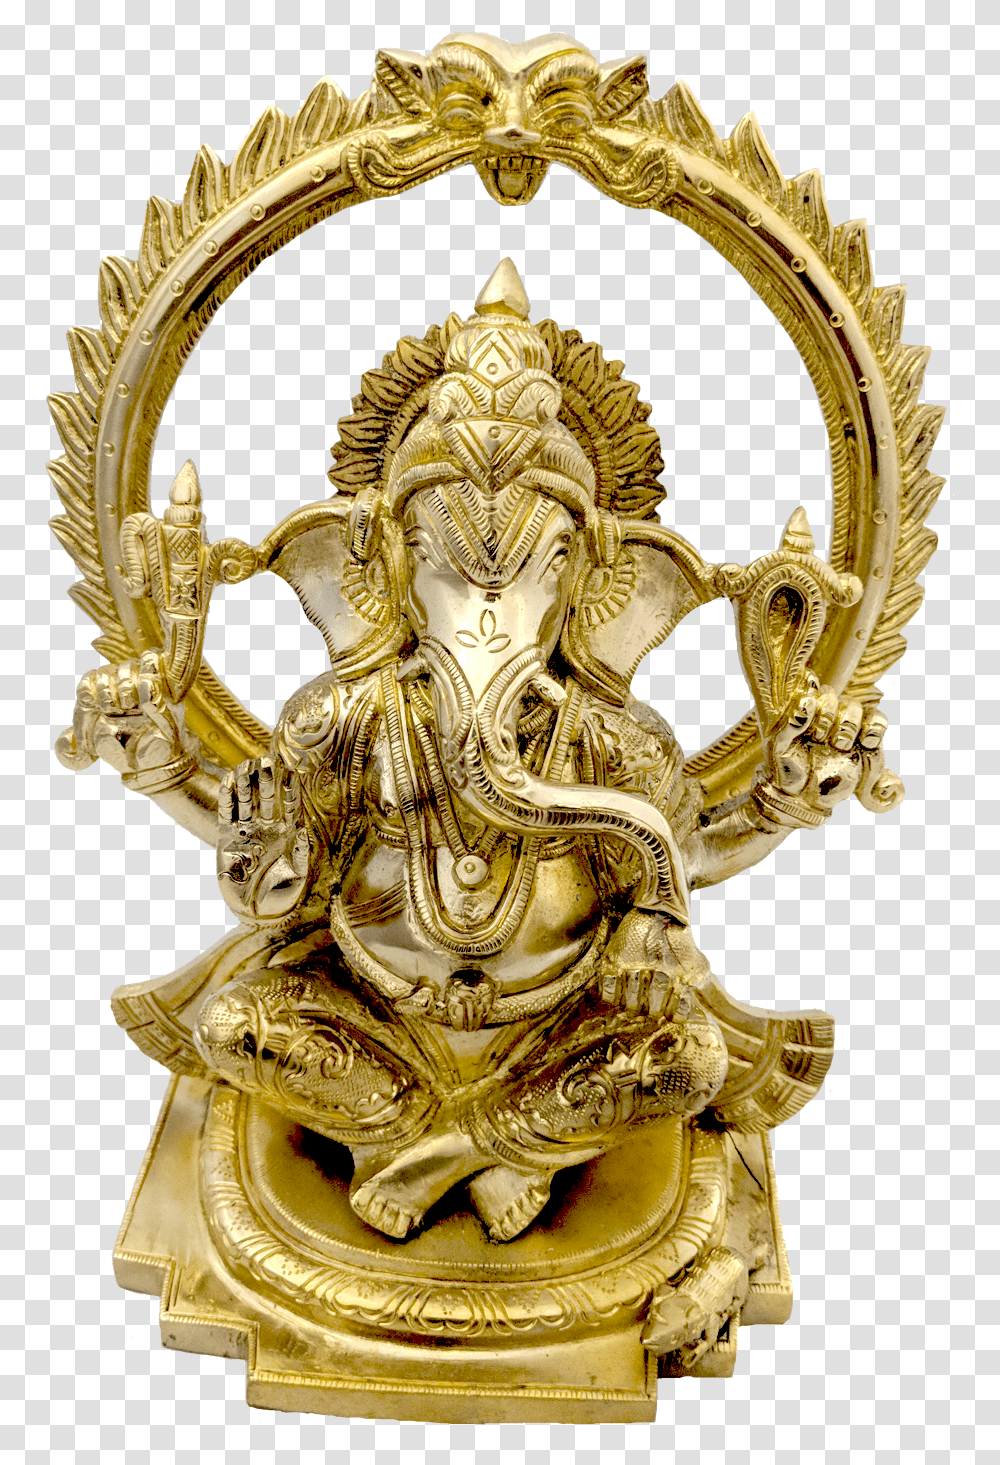 Indian Brass Handicraft Ganesh Statue, Cross, Furniture, Gold Transparent Png